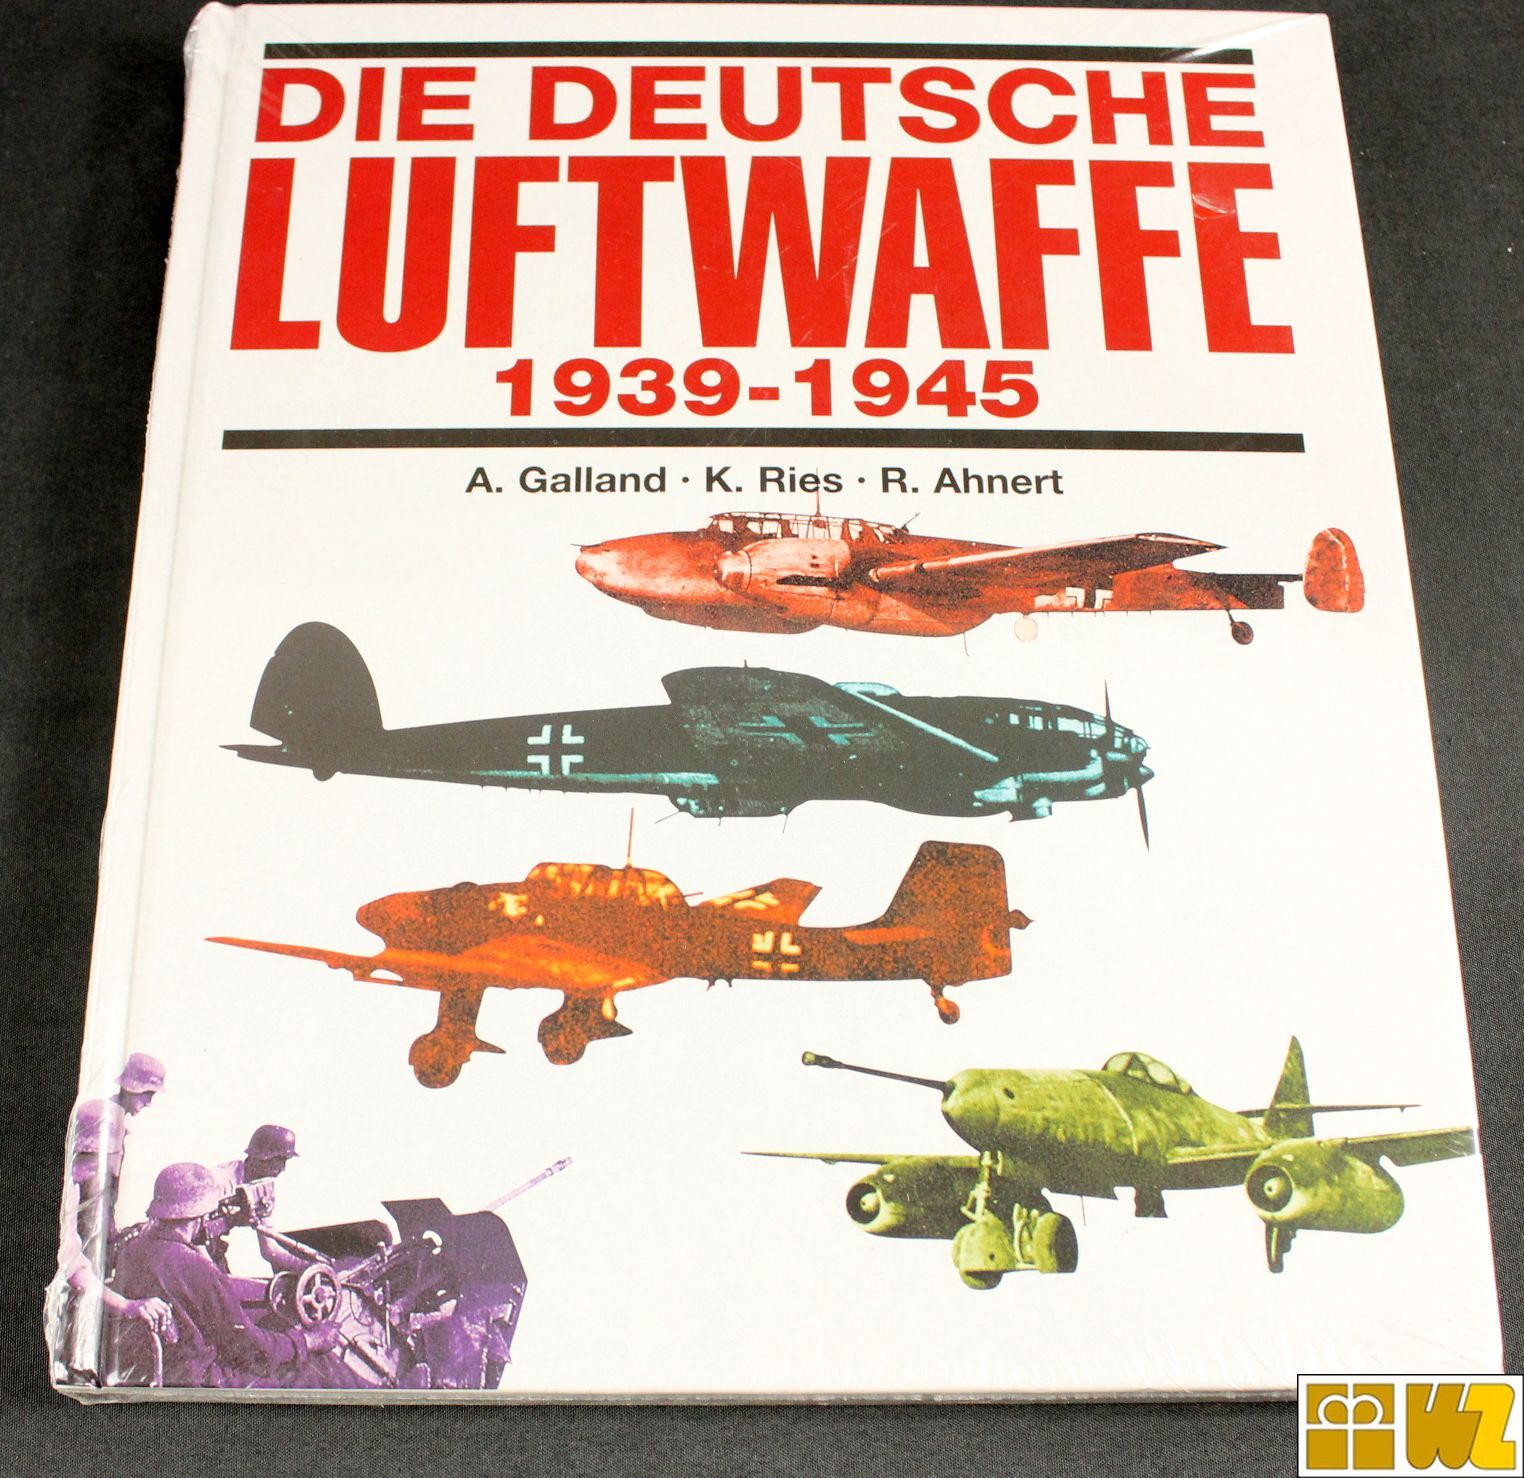 A. Galland, K. Ries, R. Ahnert: Die Deutsche Luftwaffe 1939-1945